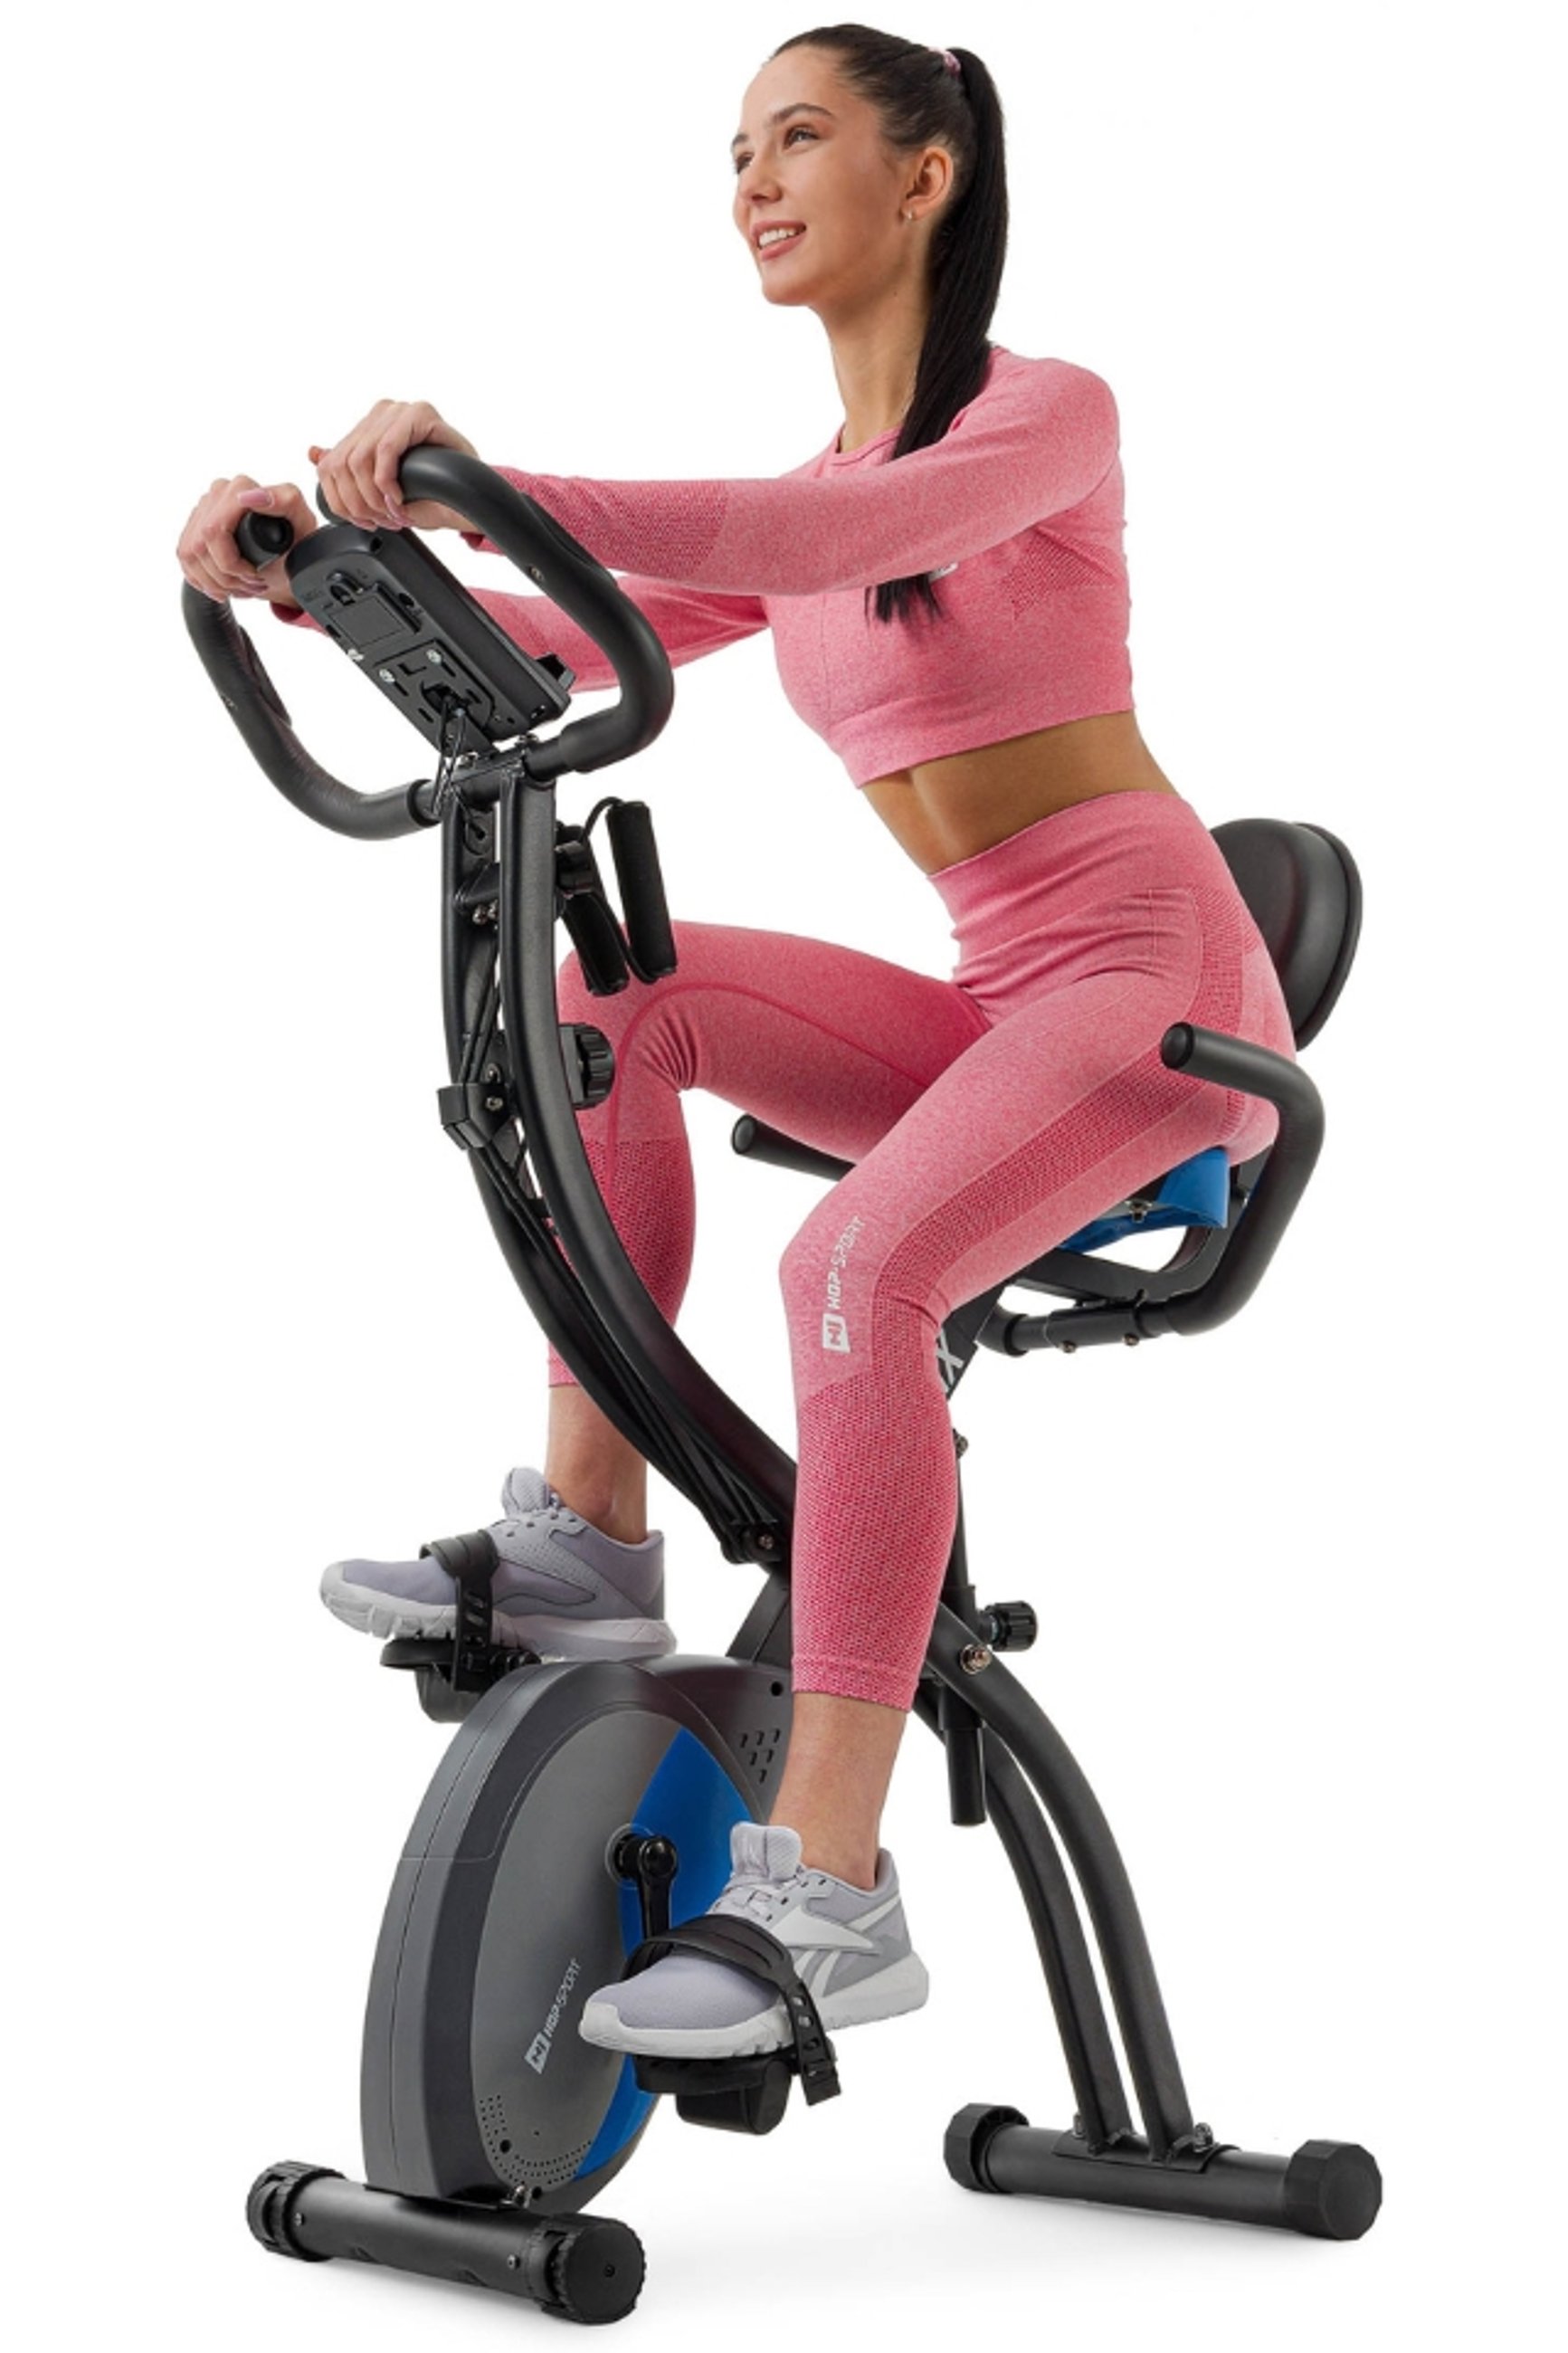 modelka ćwicząca na rowerze treningowym 